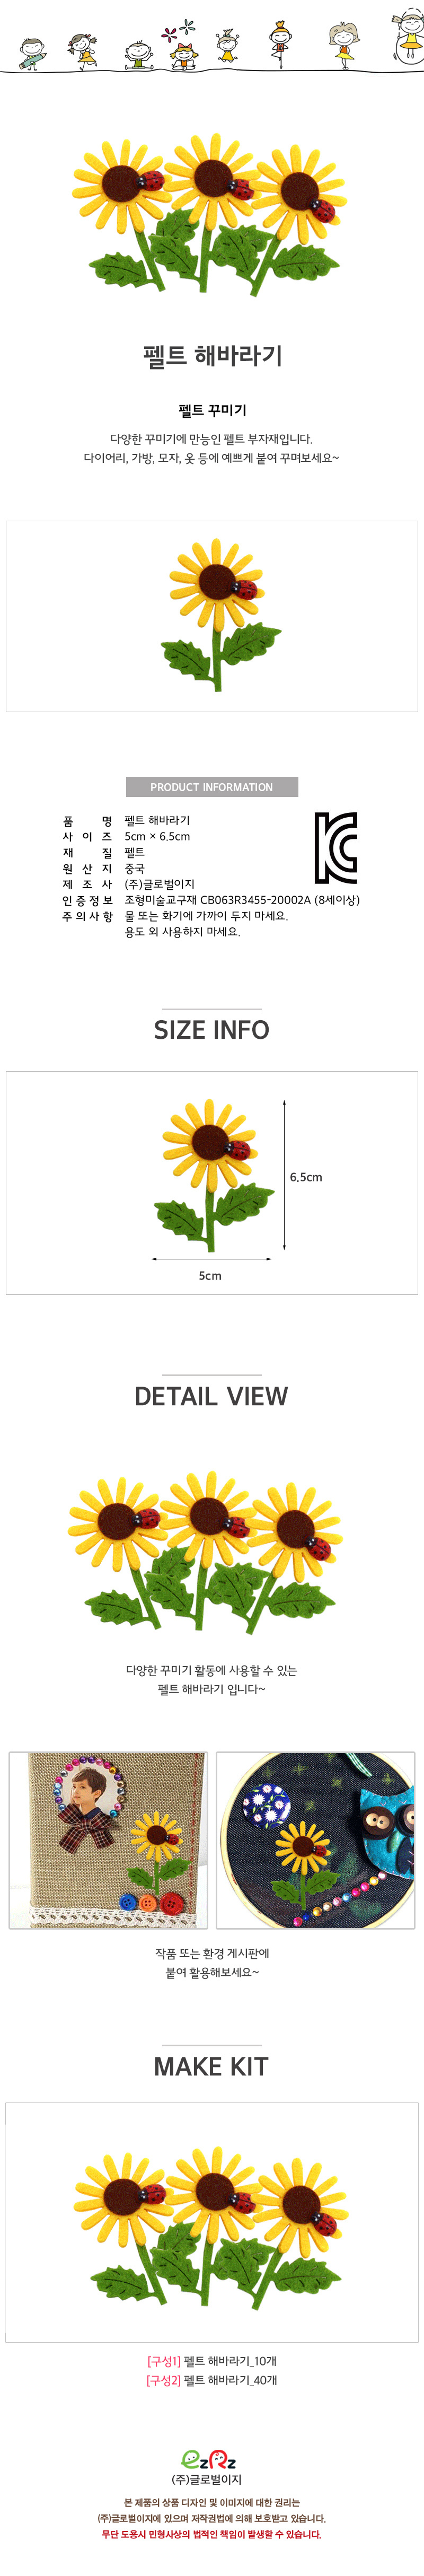 pelt_sunflower_p.jpg